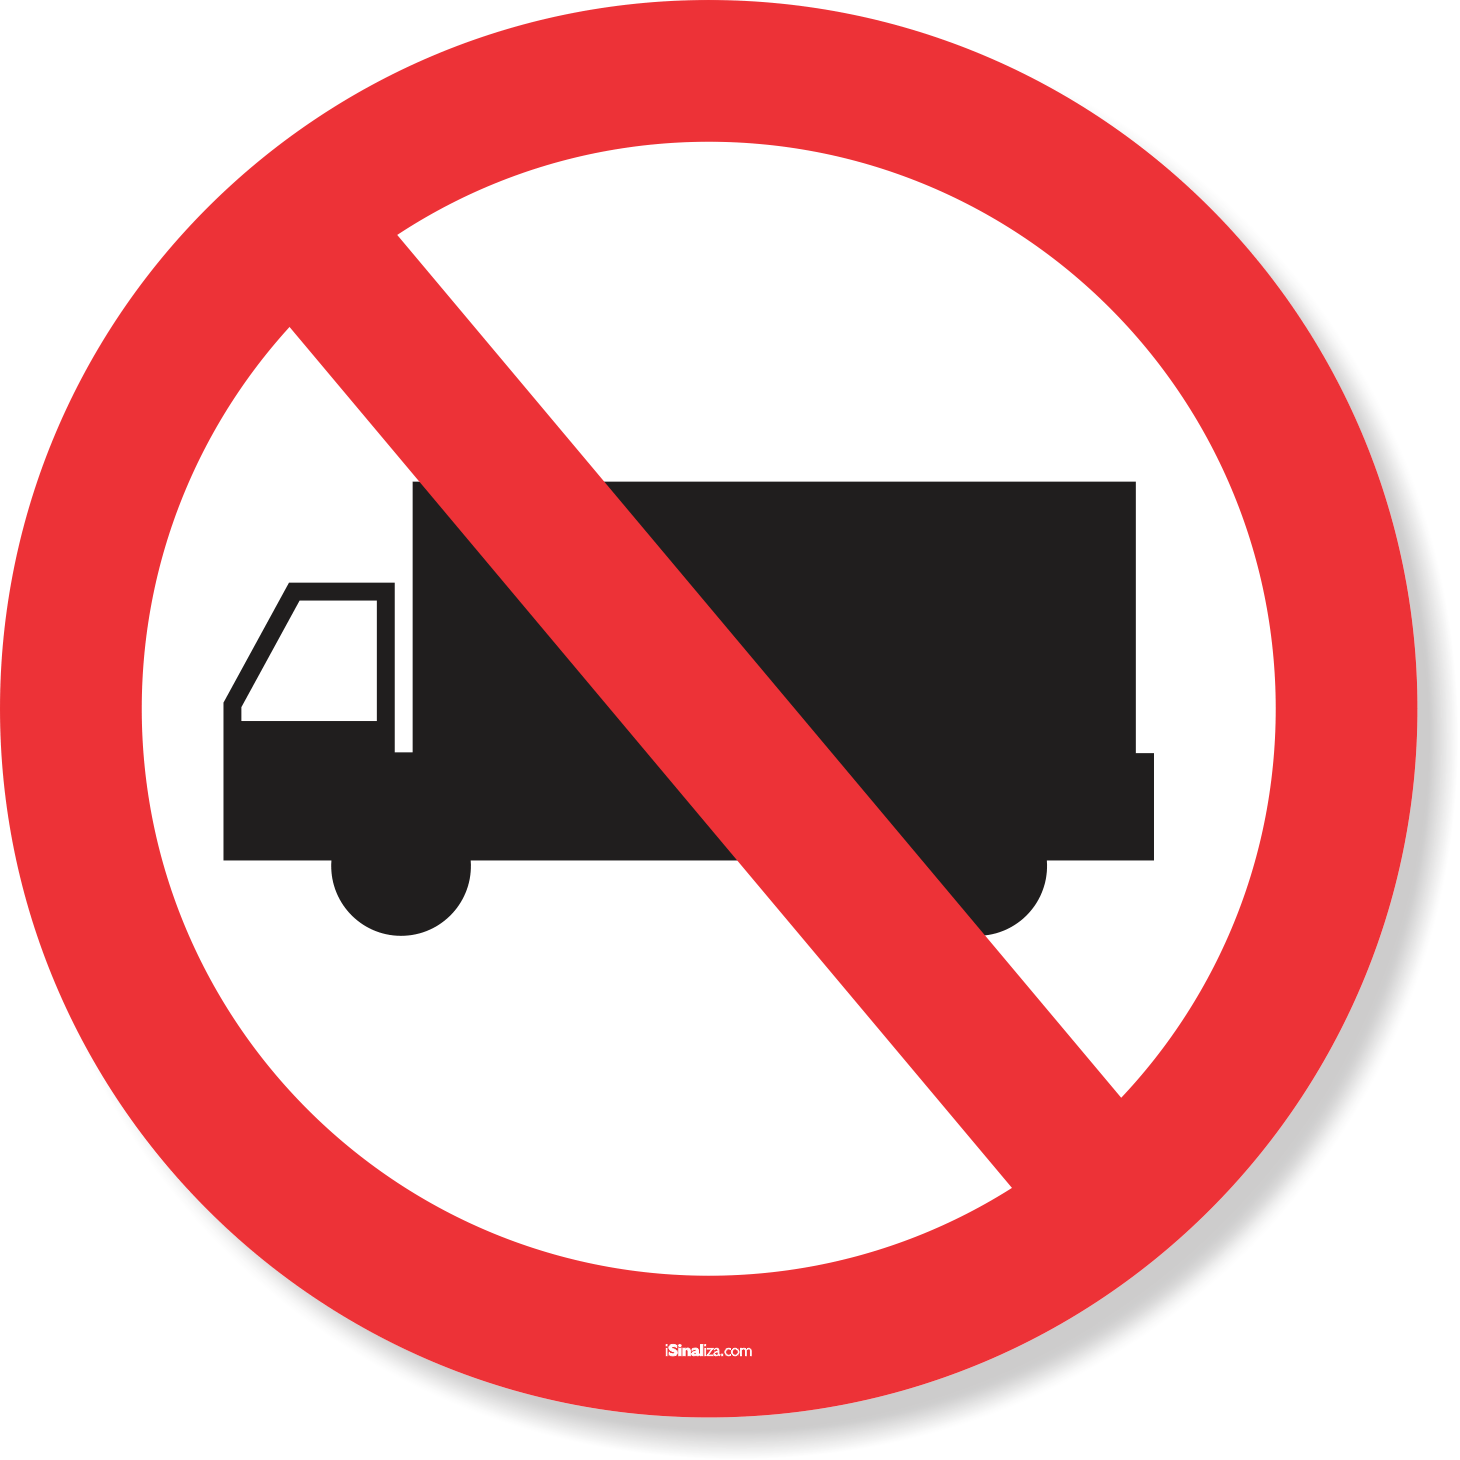 Sinais de trânsito, regras, estacionamento é proibido, pare, reboque,  caminhão, seta